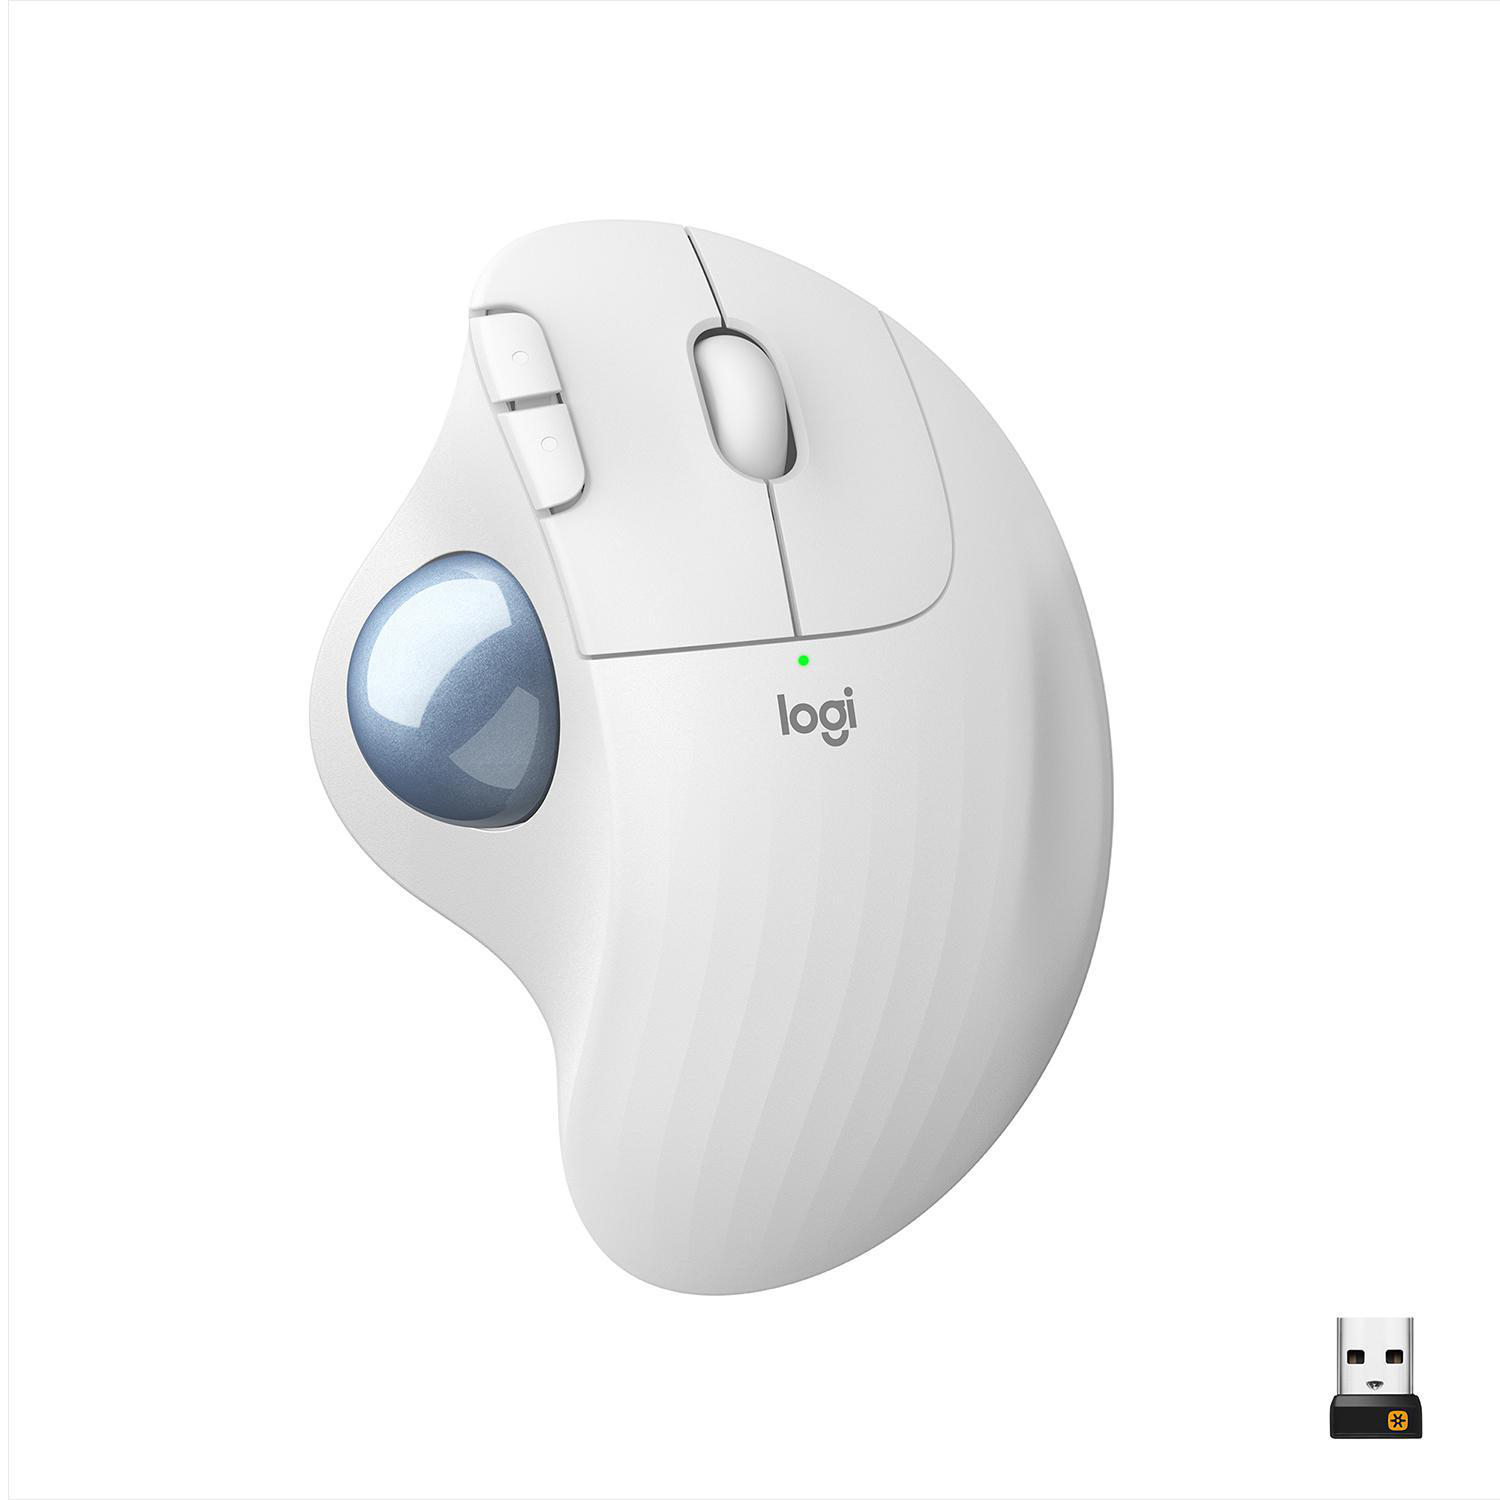 LOGITECH ERGO Ergo-Maus, Design, Windows, Wireless Weiß & PC - Trackball Maus M575 ergonomisches Mac